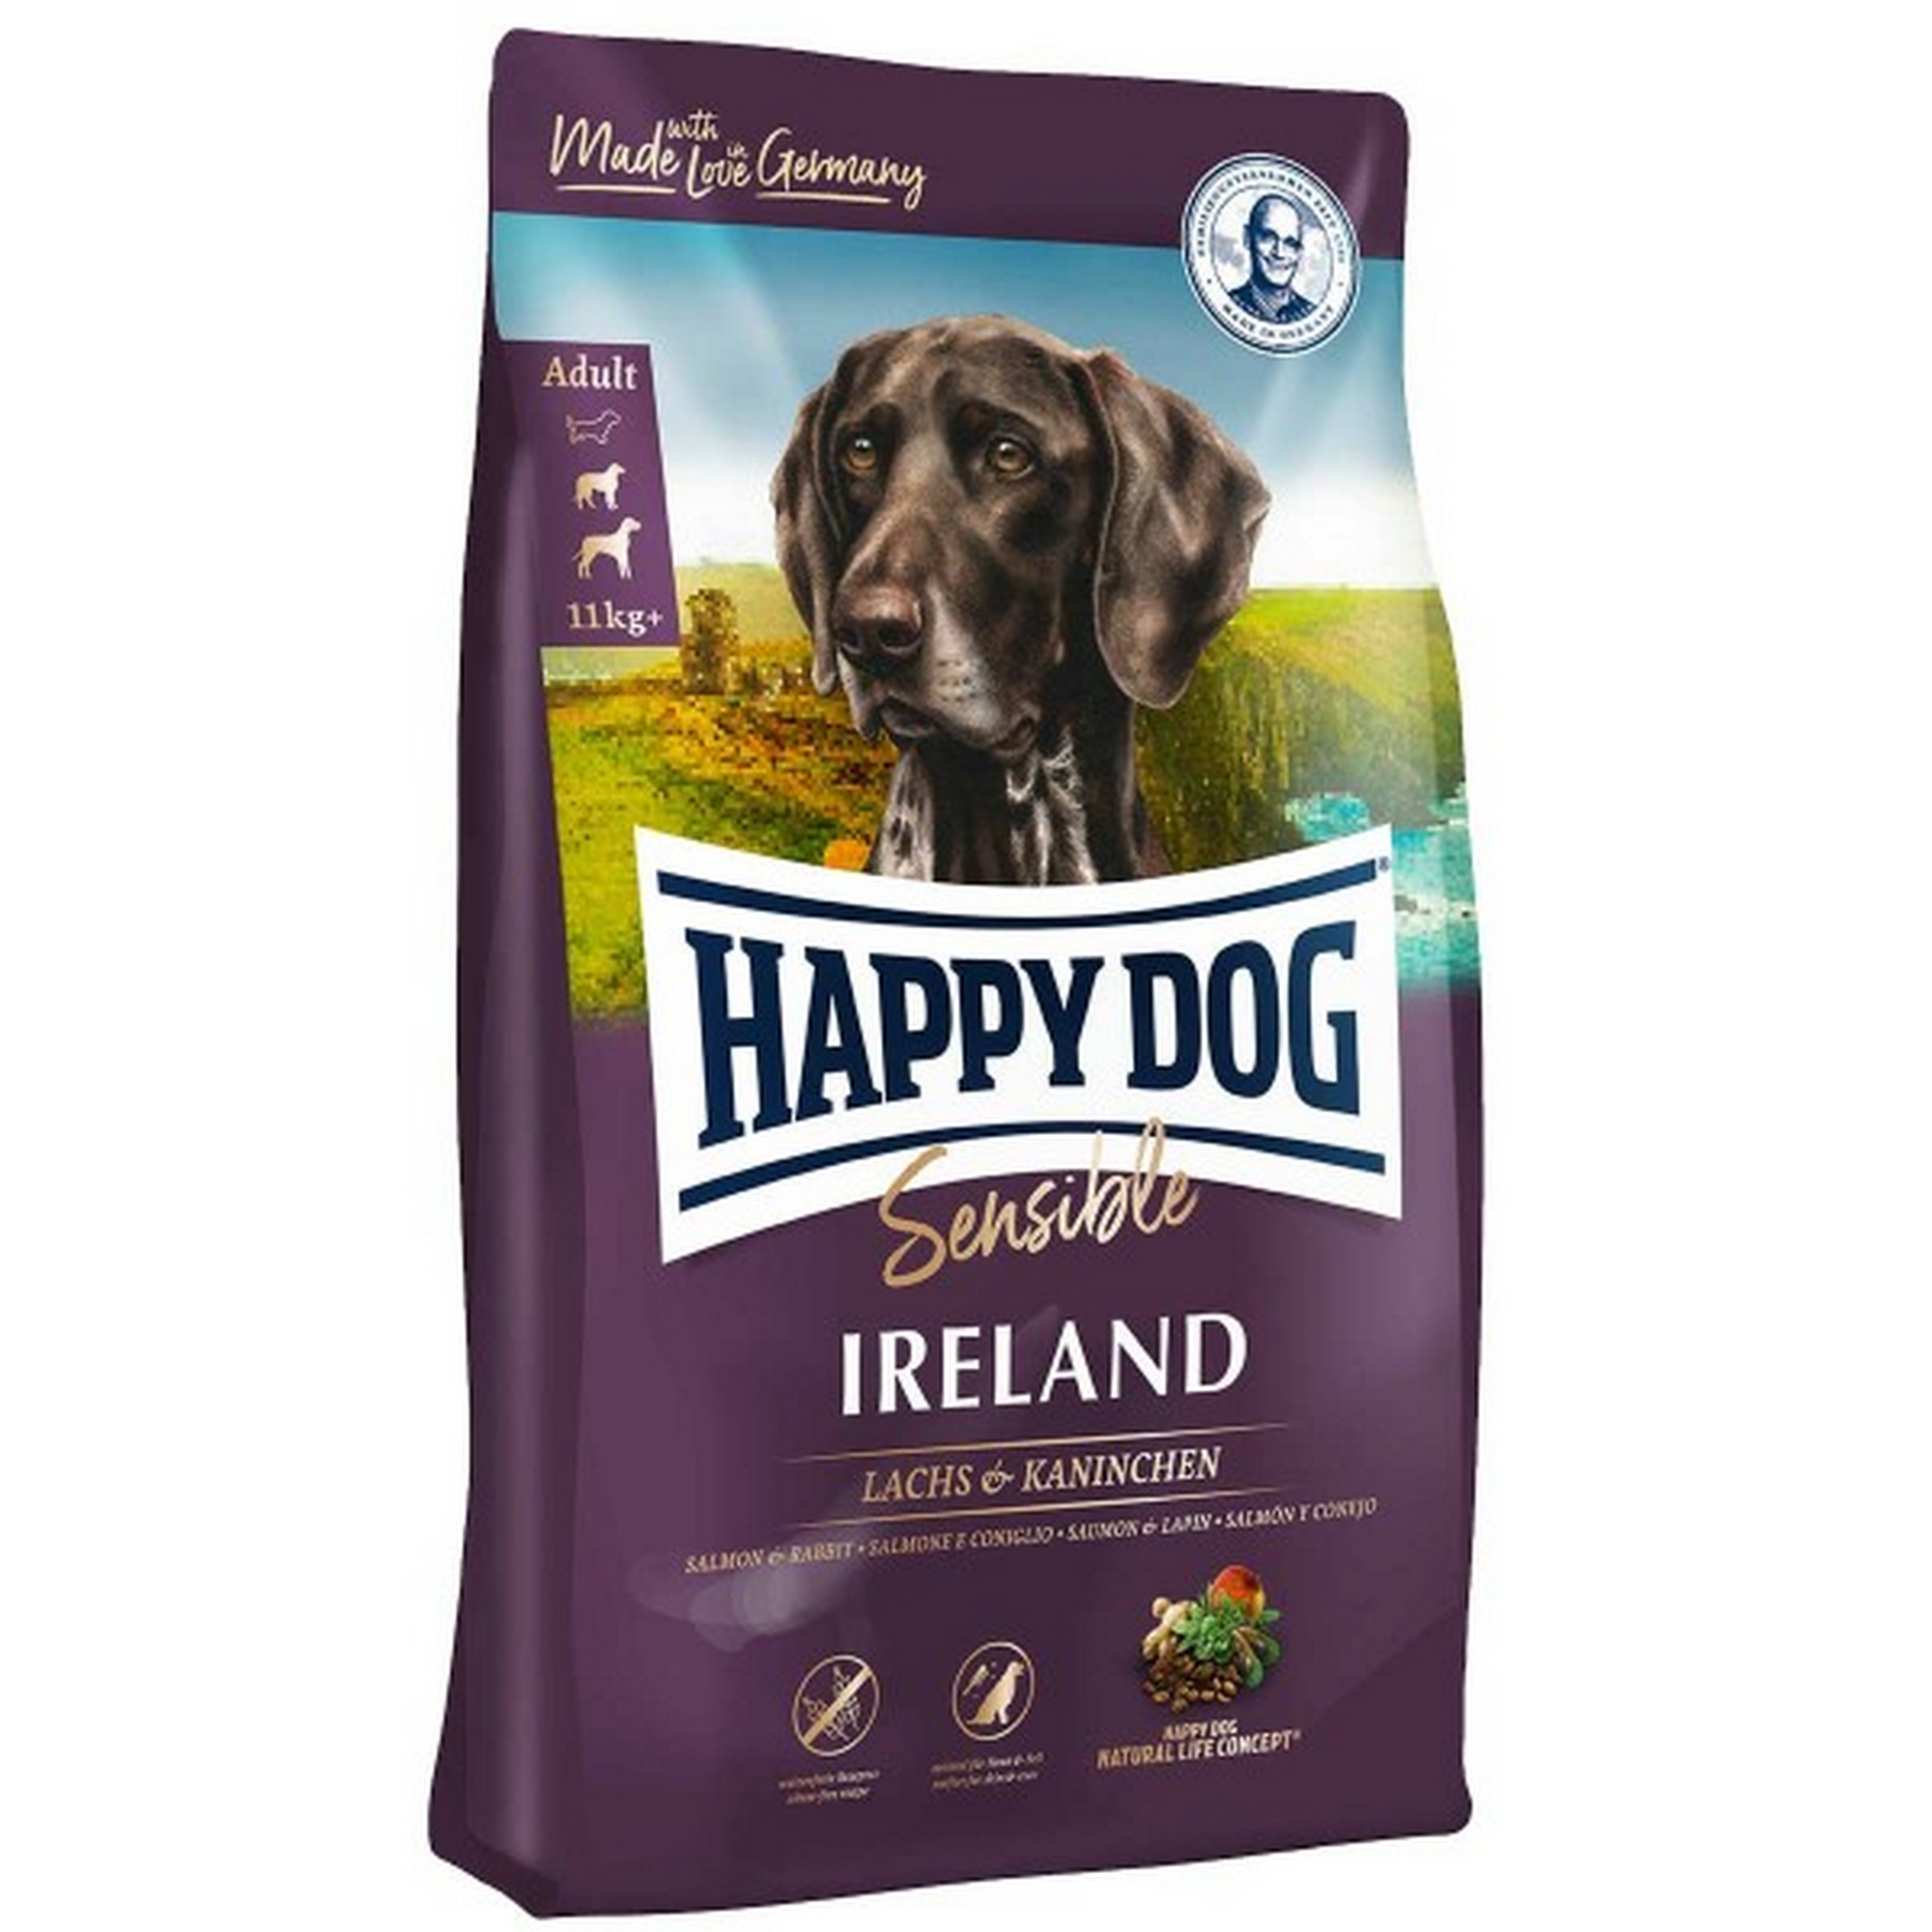 Hundetrockenfutter 'Supreme Sensible' Ireland 12,5 kg + product picture